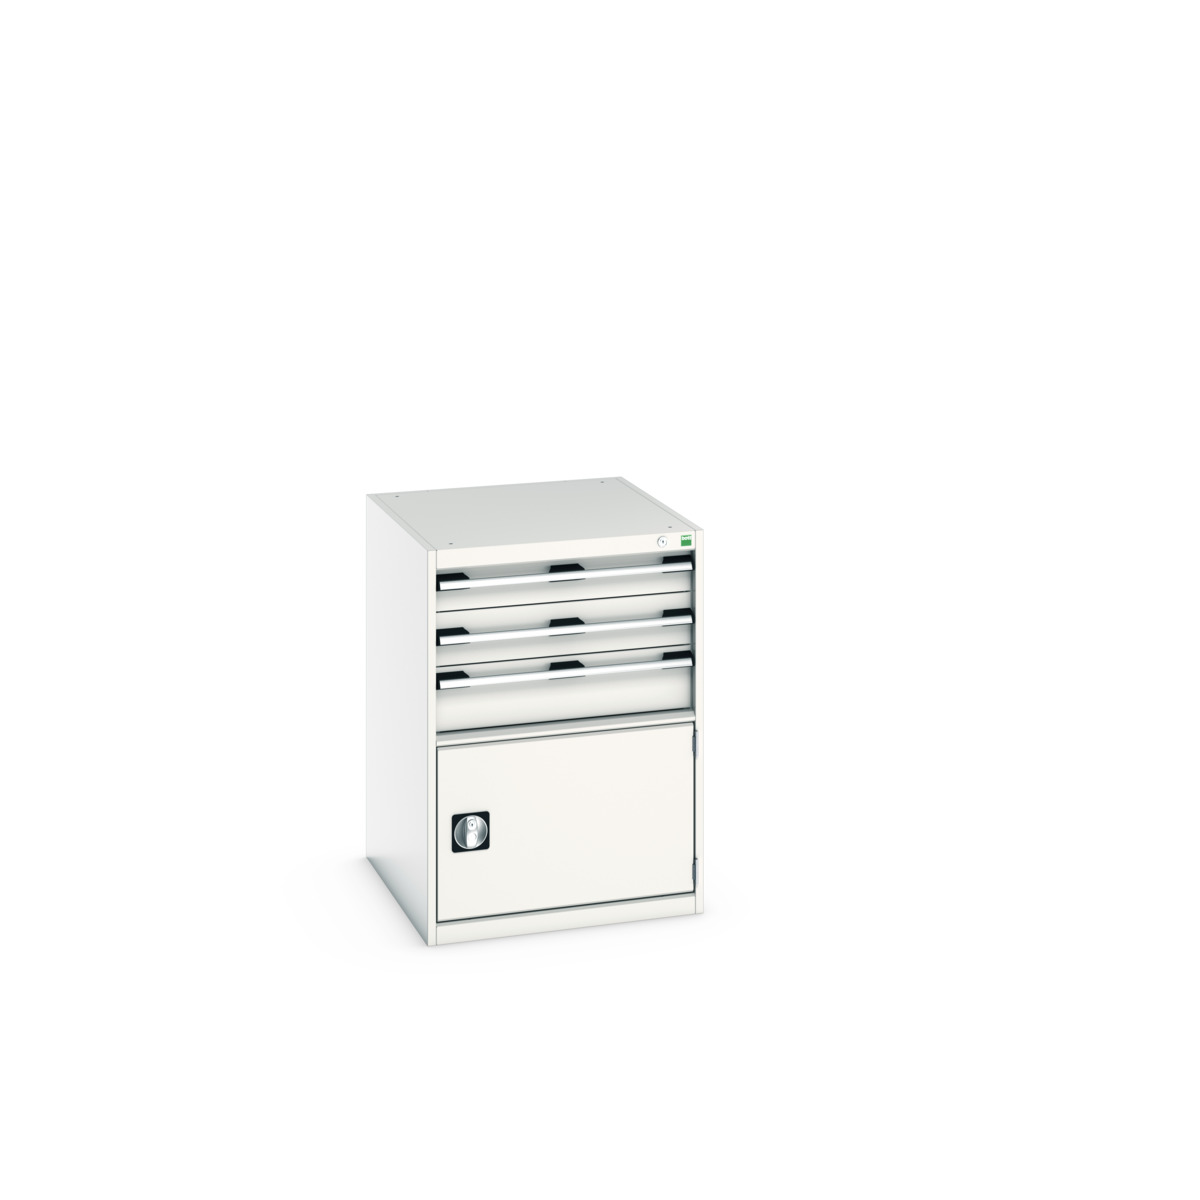 40027104.16V - cubio drawer cabinet